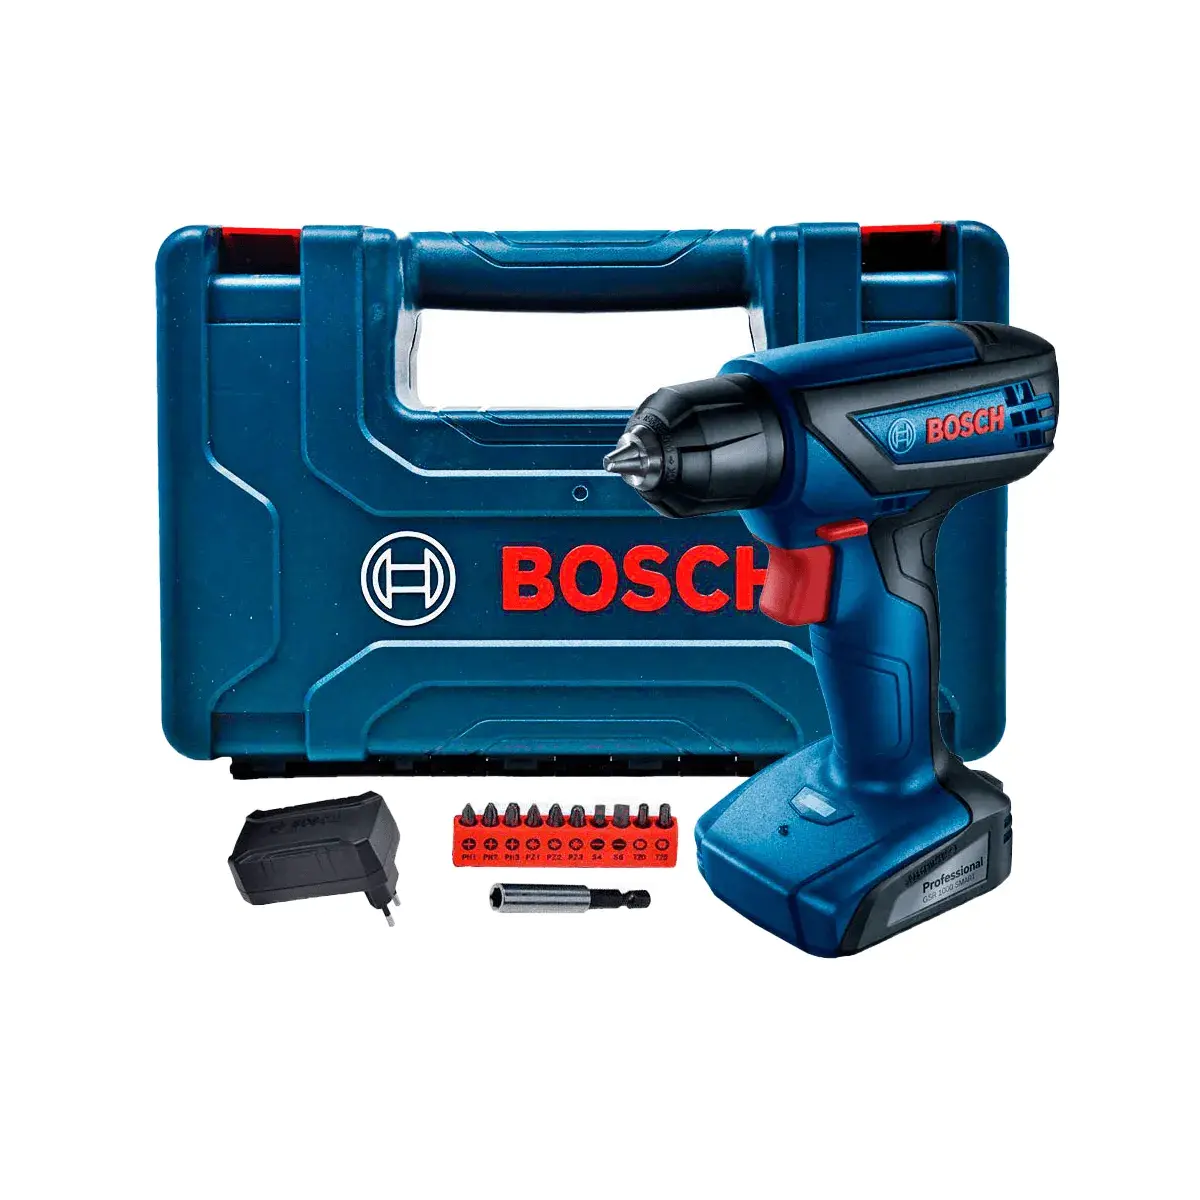 Bosch Kit Destornillador Eléctrico GSR 12V-15 Azul